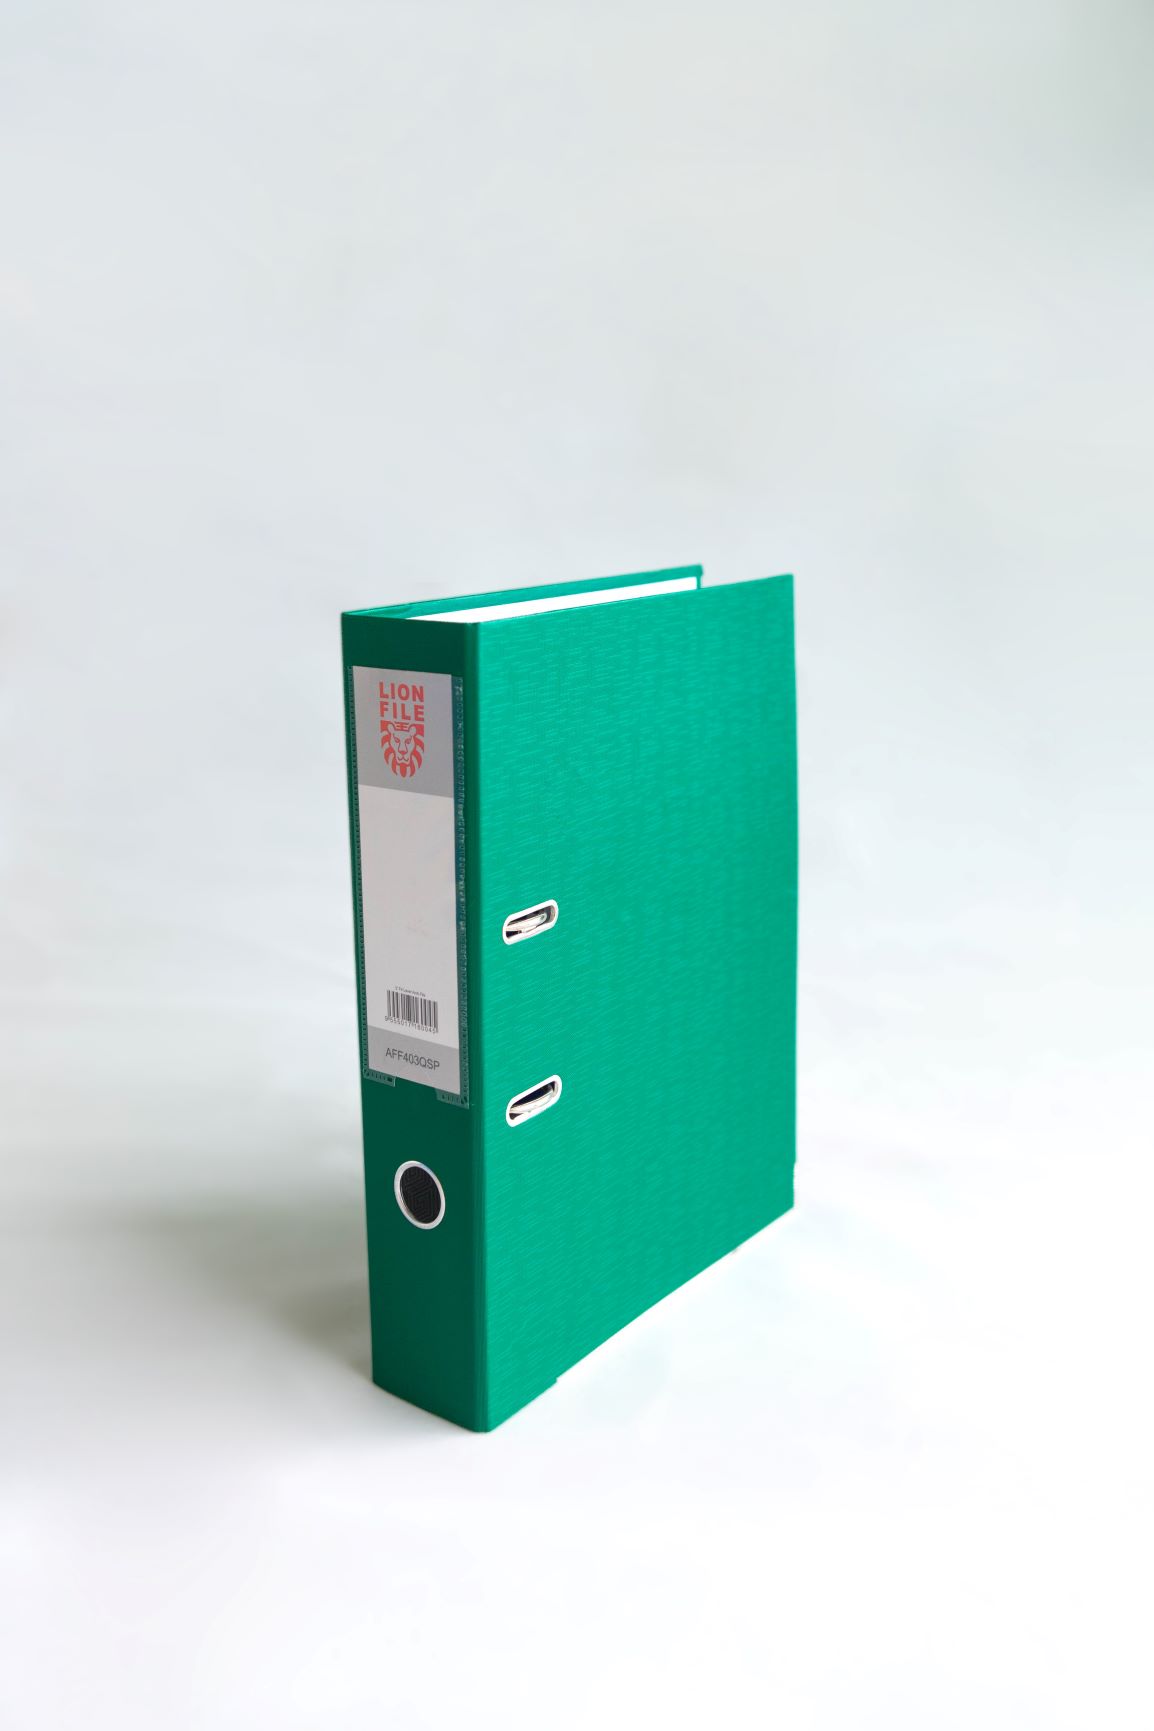 Premium Green Color Lion File Lever Arch File F4 - 3" (30 Units Per Carton)